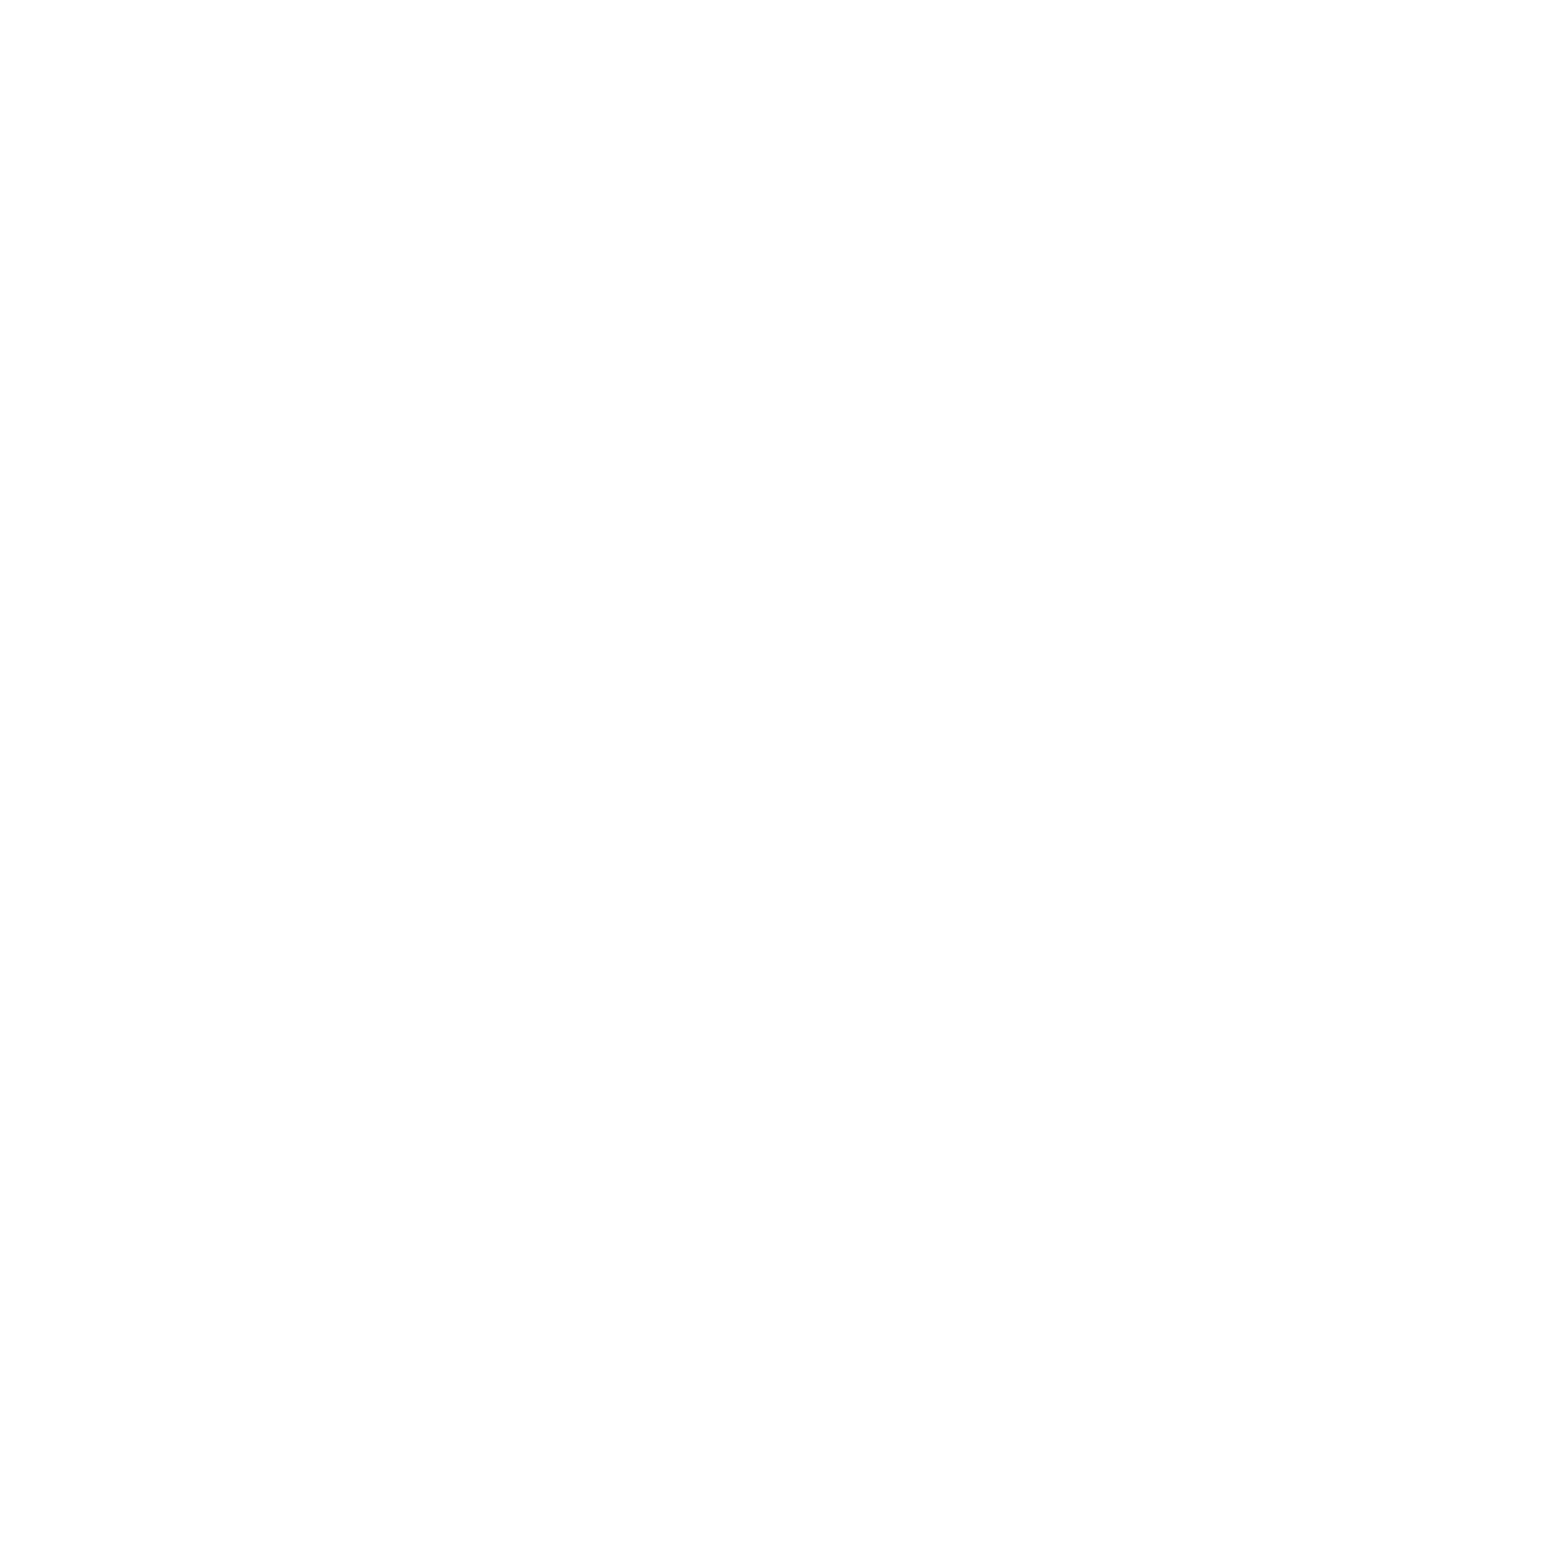 Wise Earth Bush School 